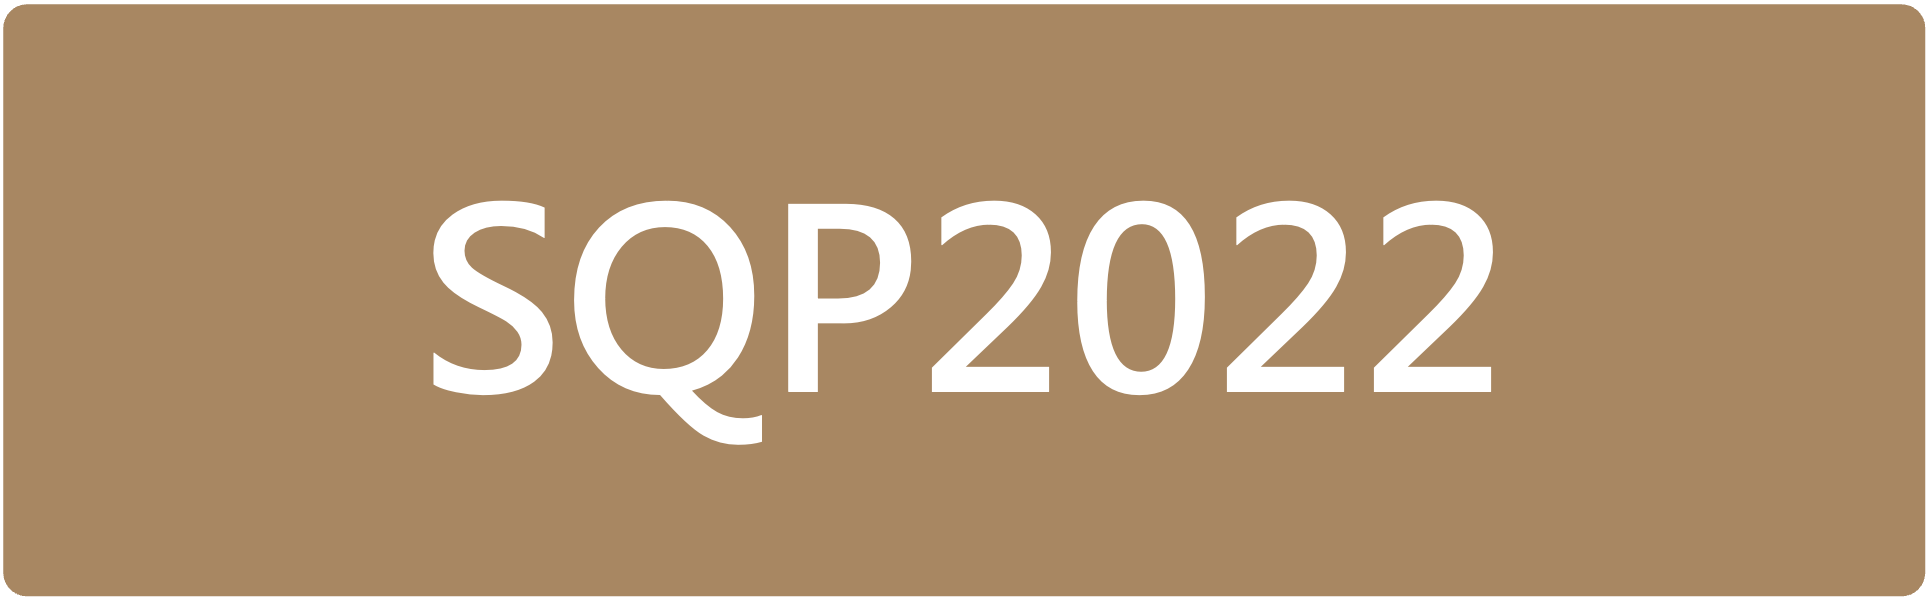 Stat&QuantPhys Autumn School 2021 (SQP2021)